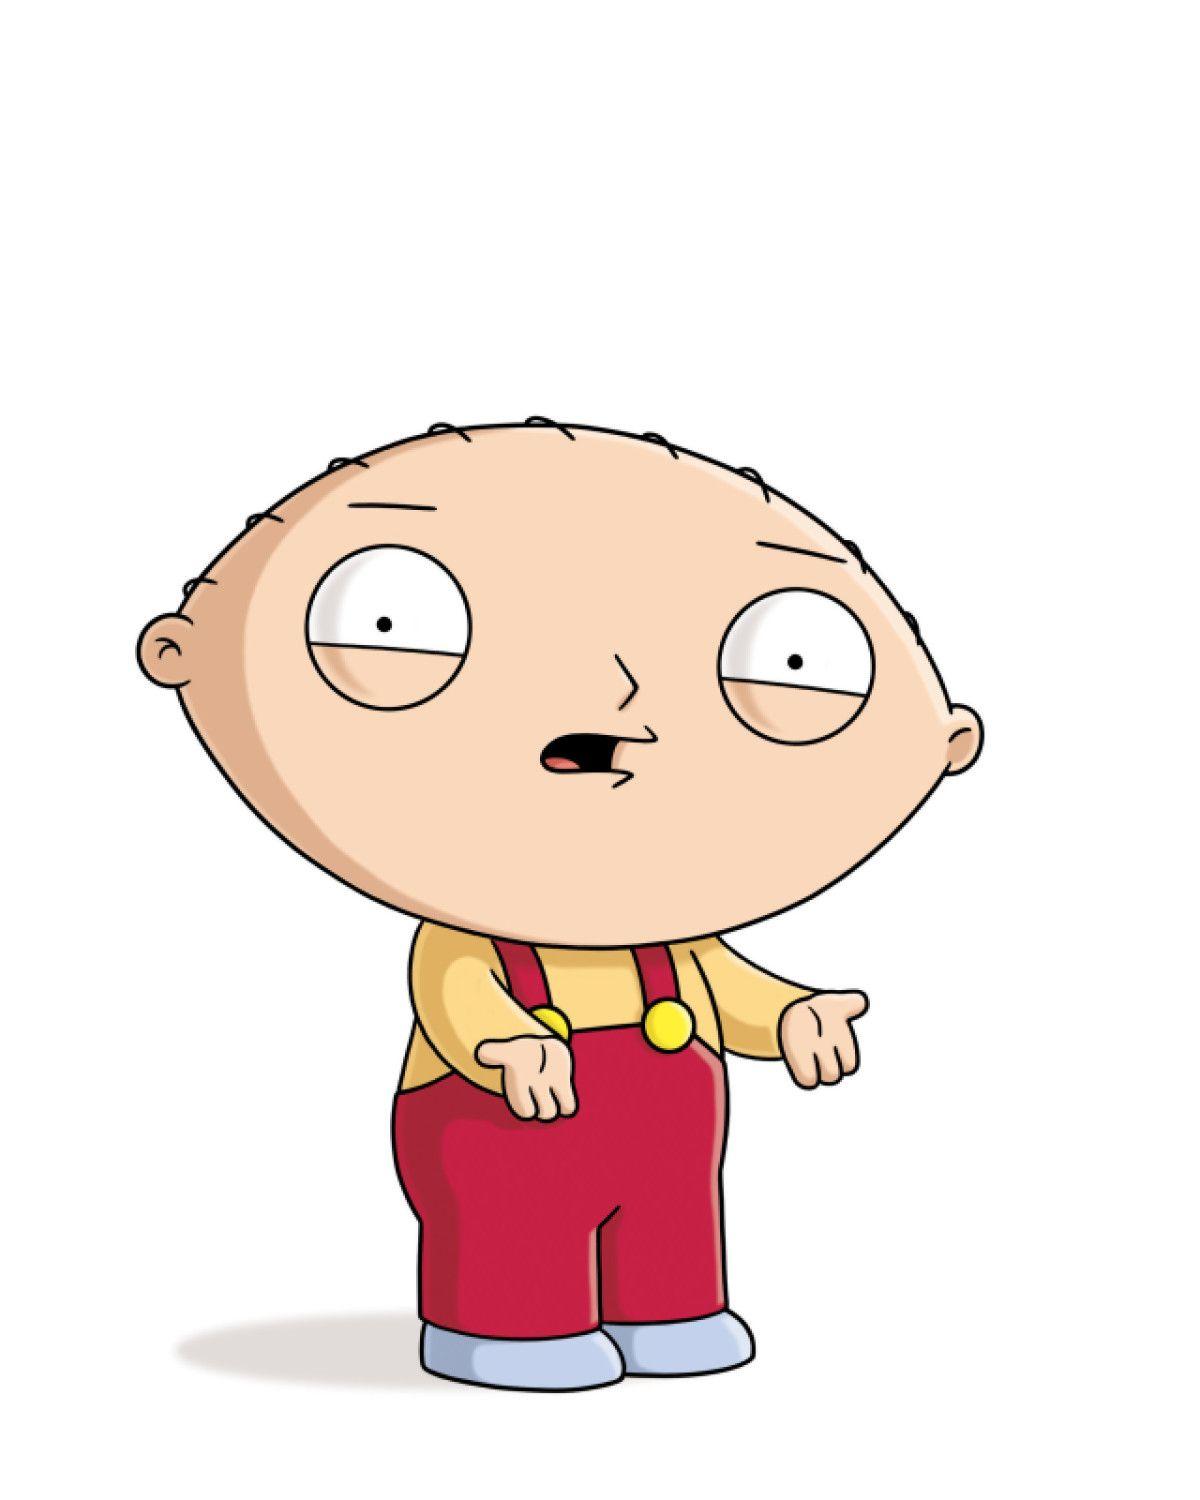 Family Guy official site for FOX TV in UK